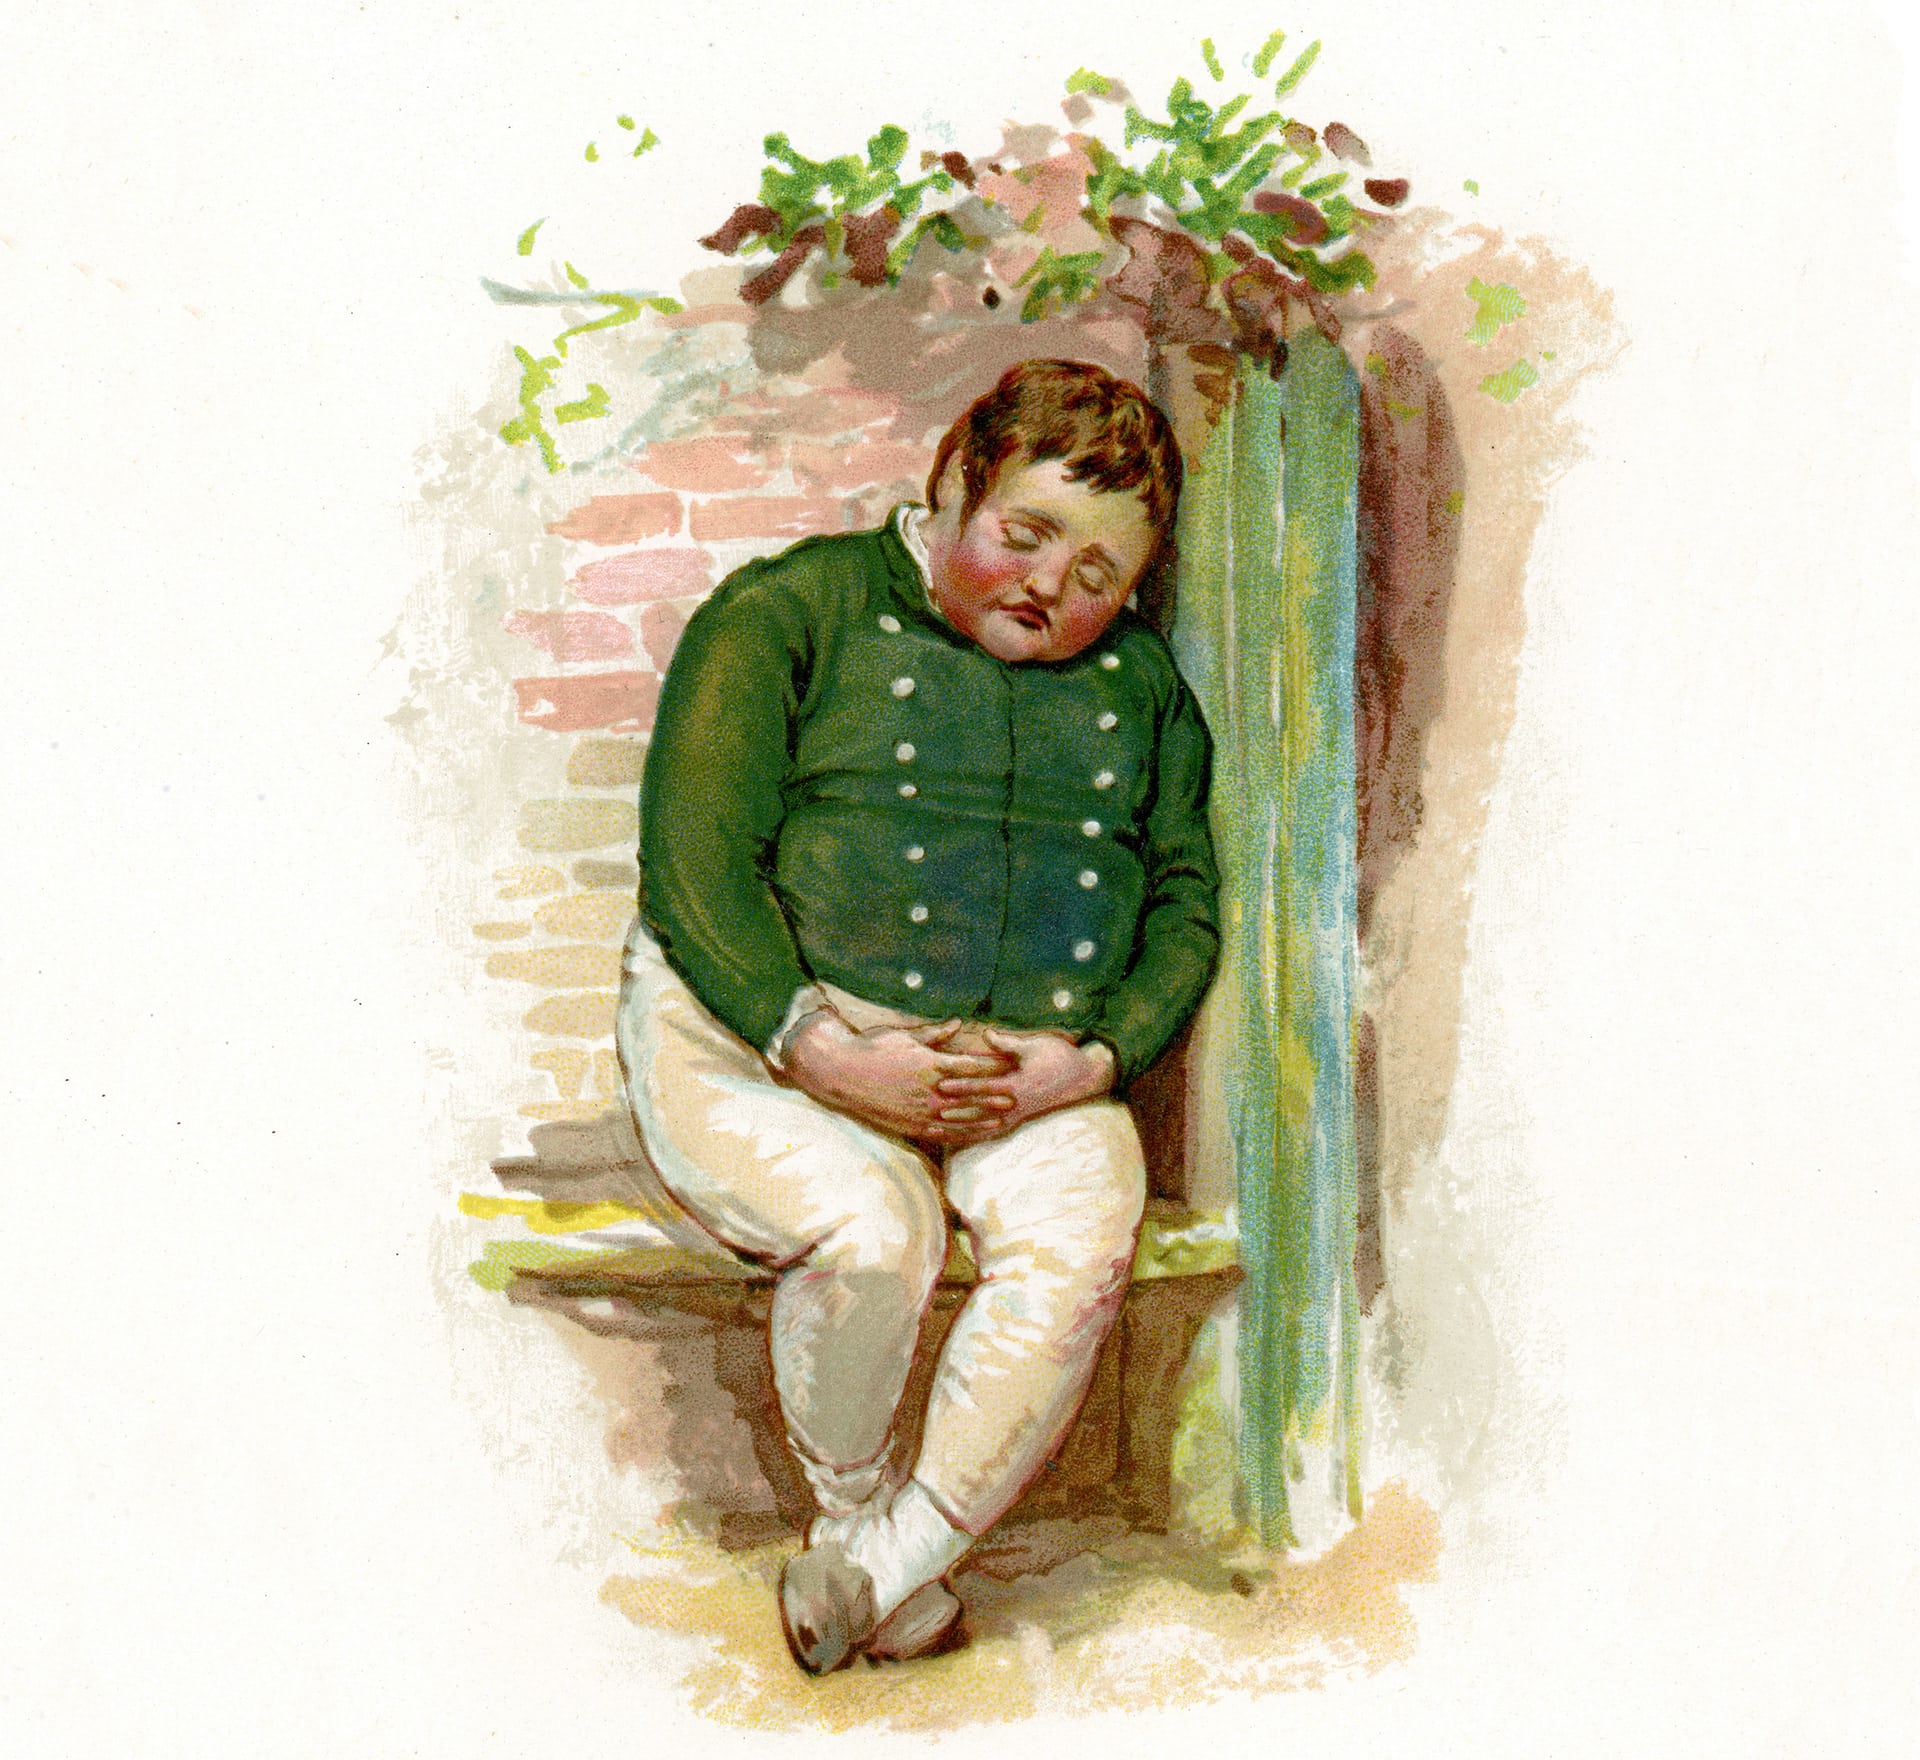 Chứng thở chậm do béo phì, ban đầu được gọi là Triệu chứng Pickwick vì giống hệt với những mô tả của Charles Dickens về cậu bé Joe “béo” trong tác phẩm Pickwick Papers. Ảnh: Alamy